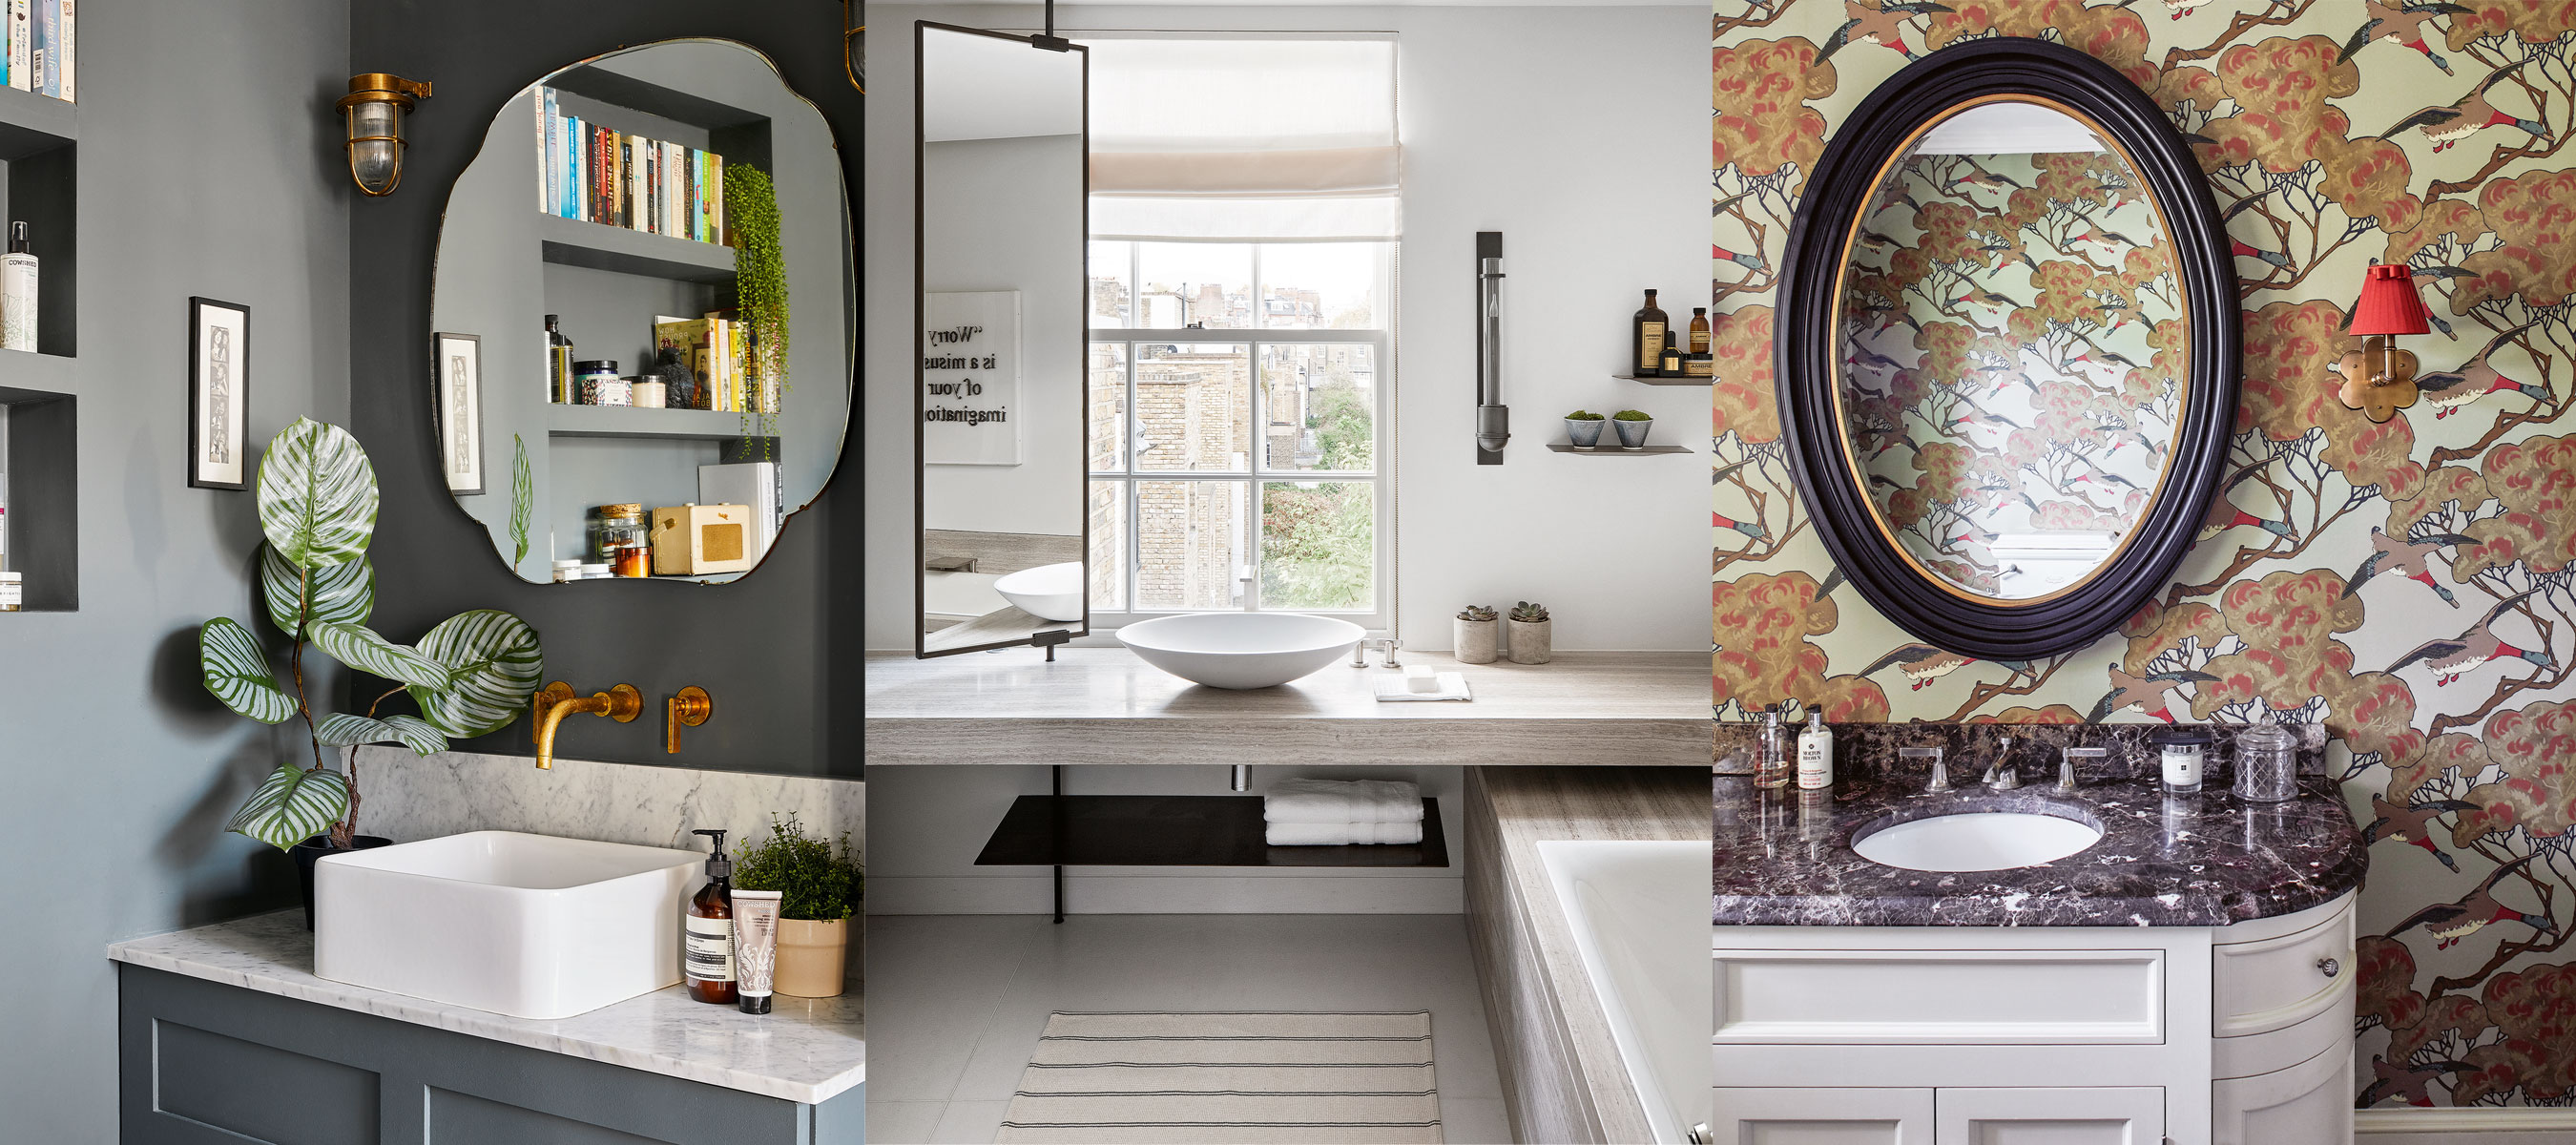 Bathroom Mirror Ideas: 10 Designs To Suit Any Bathroom |